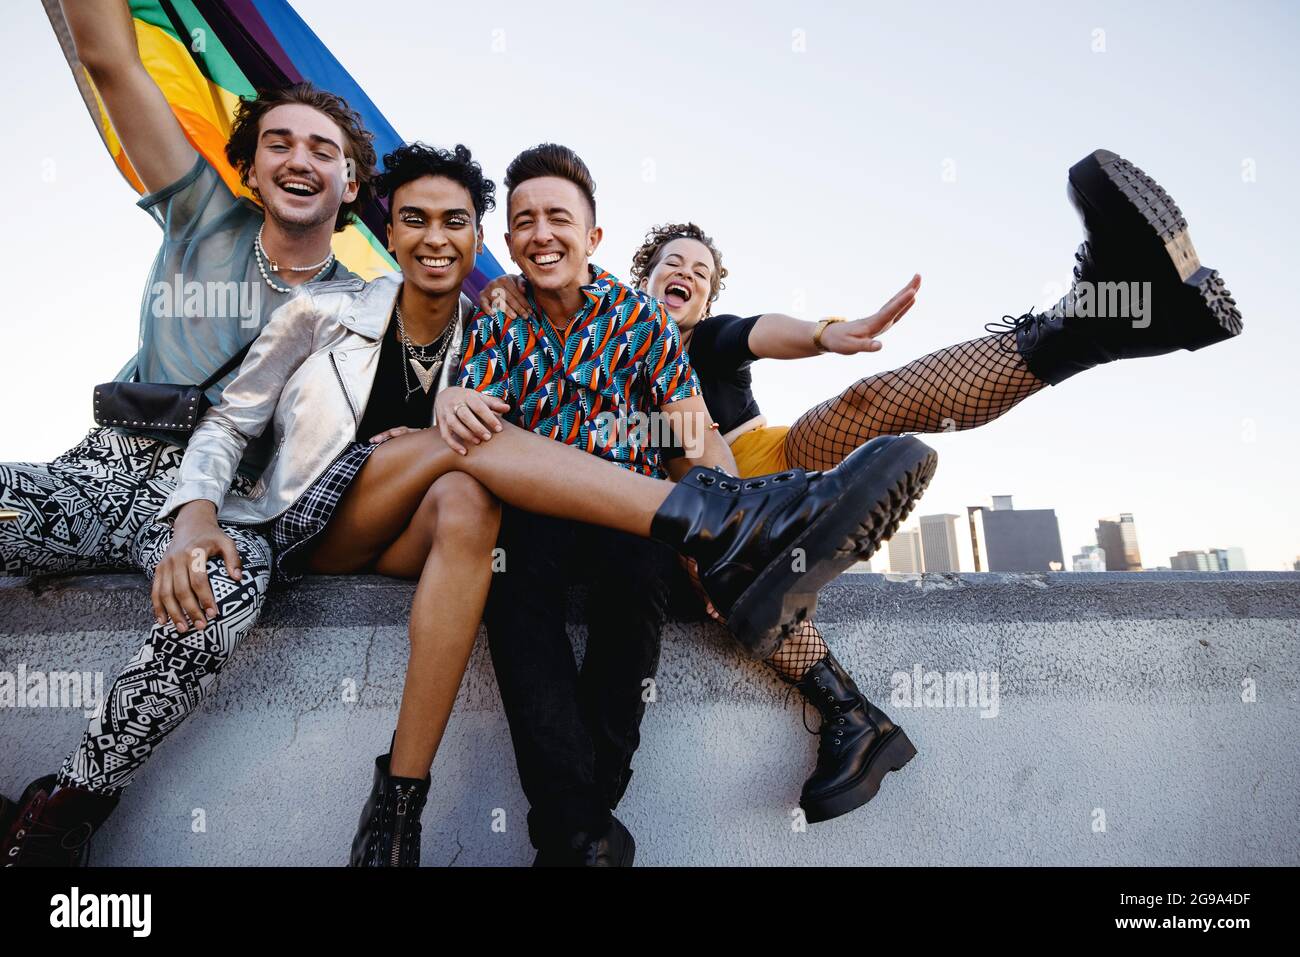 Quatre personnes LGBTQ célèbrent leur fierté tout en étant assis ensemble. Quatre amis souriant avec joie tout en levant le drapeau de fierté de l'arc-en-ciel. Groupe de jeunes queer Banque D'Images